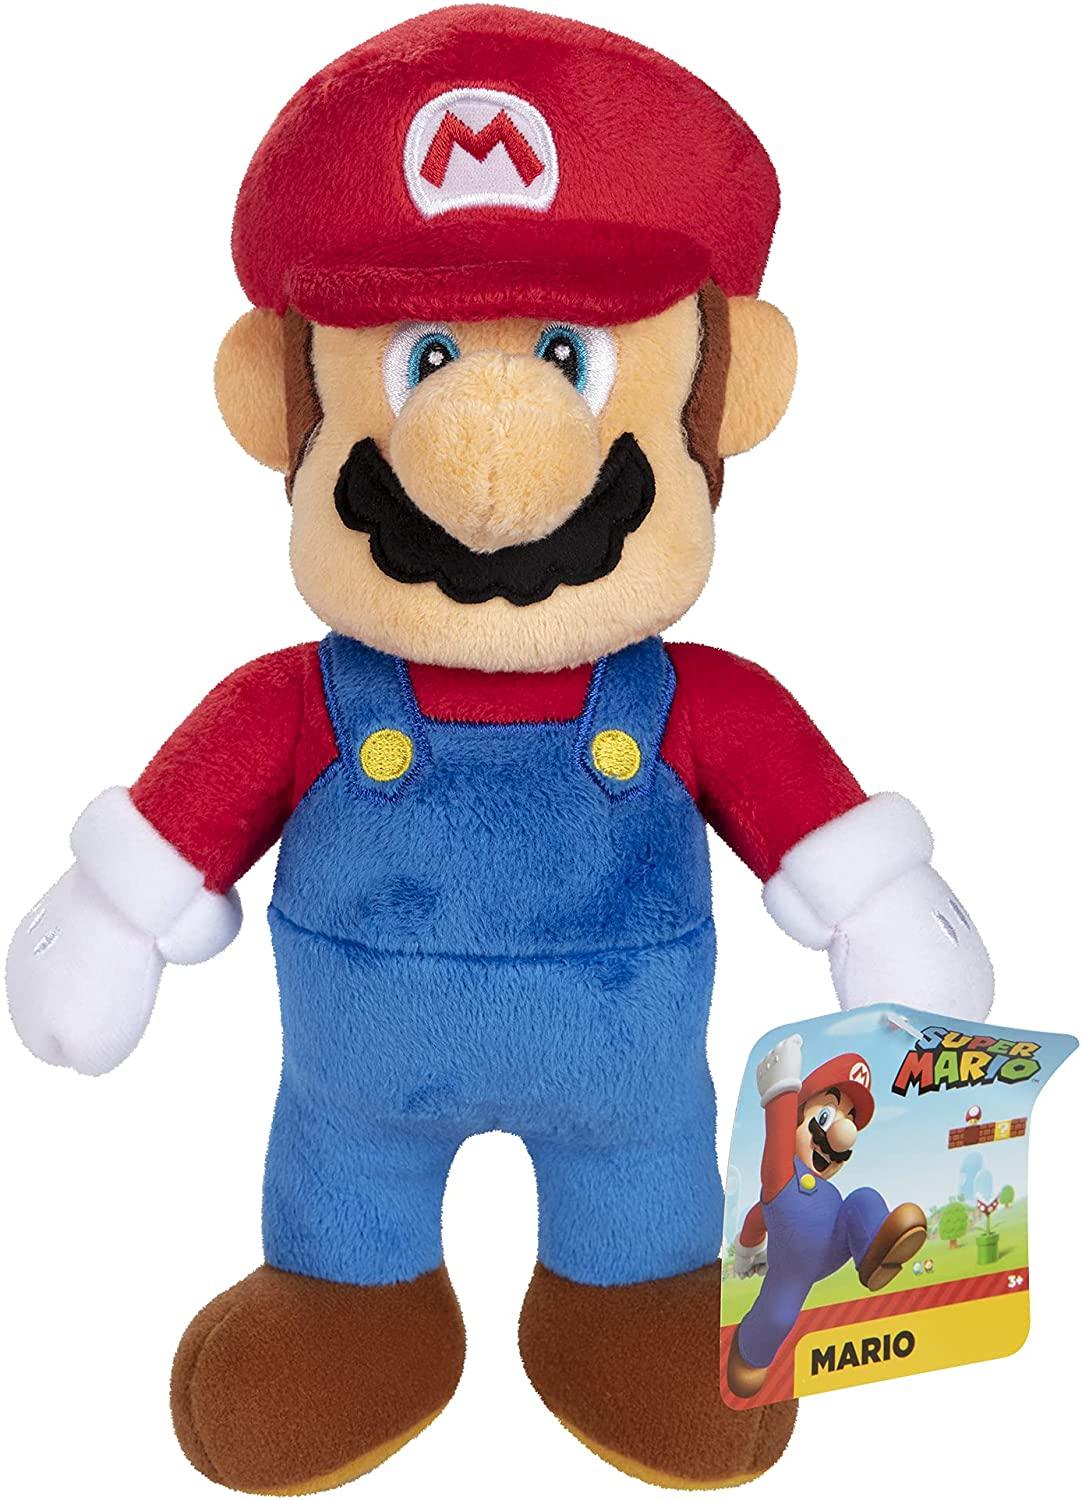 Nintendo Super Mario 9" Plush with hangtag in PDQ